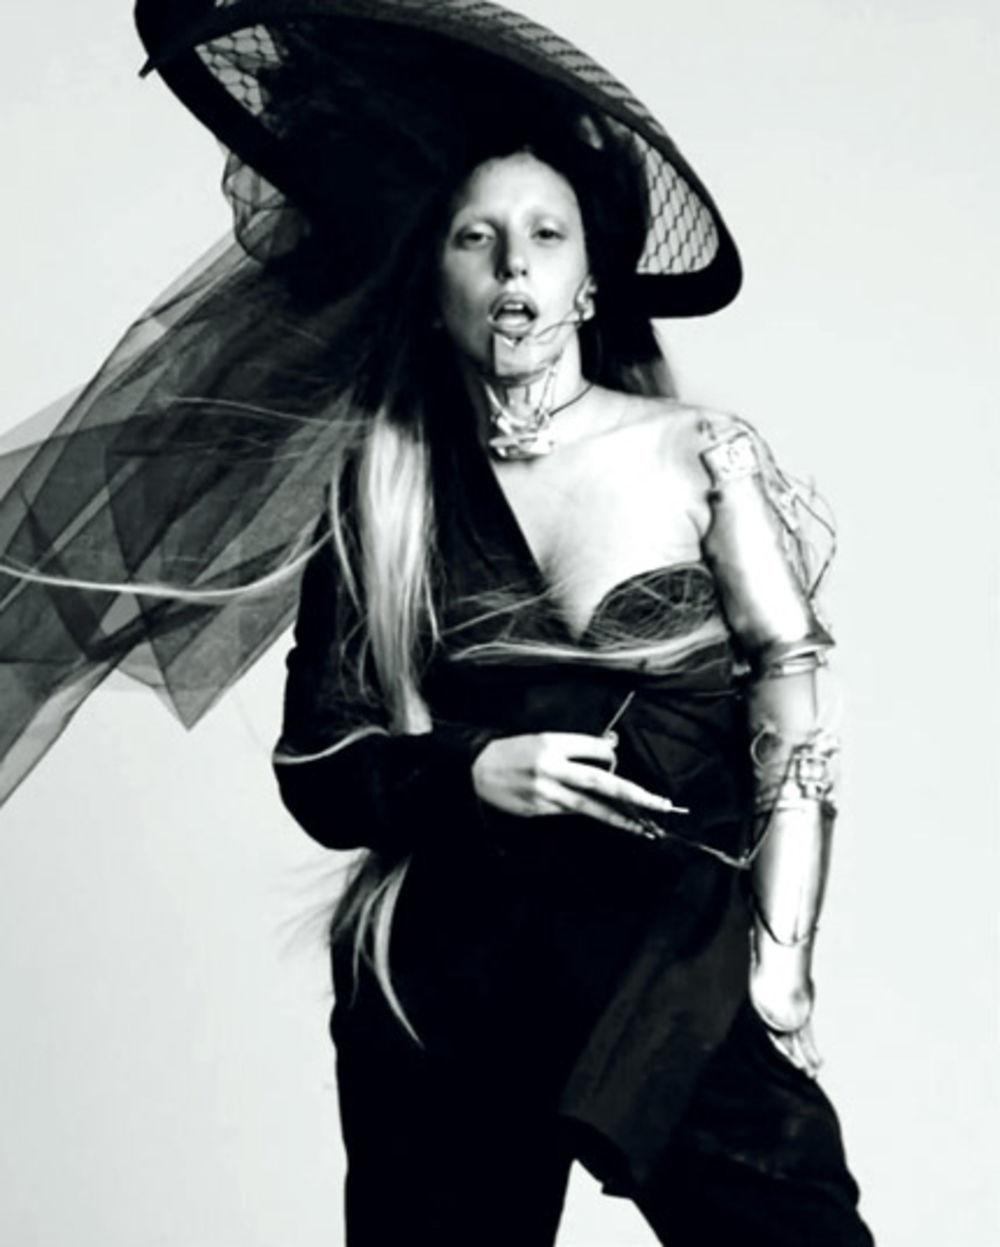 Nakon što je završila set provokativnih fotografija povodom ovogodišnjeg Fashion Weeka u Parizu, Lejdi Gaga (25) odmah se vratila svojim društvenim aktivnostima. Izrevoltirana samoubistvom tinejdžera u Njujorku koji je trpeo napade zbog svoje seksualnosti, pev